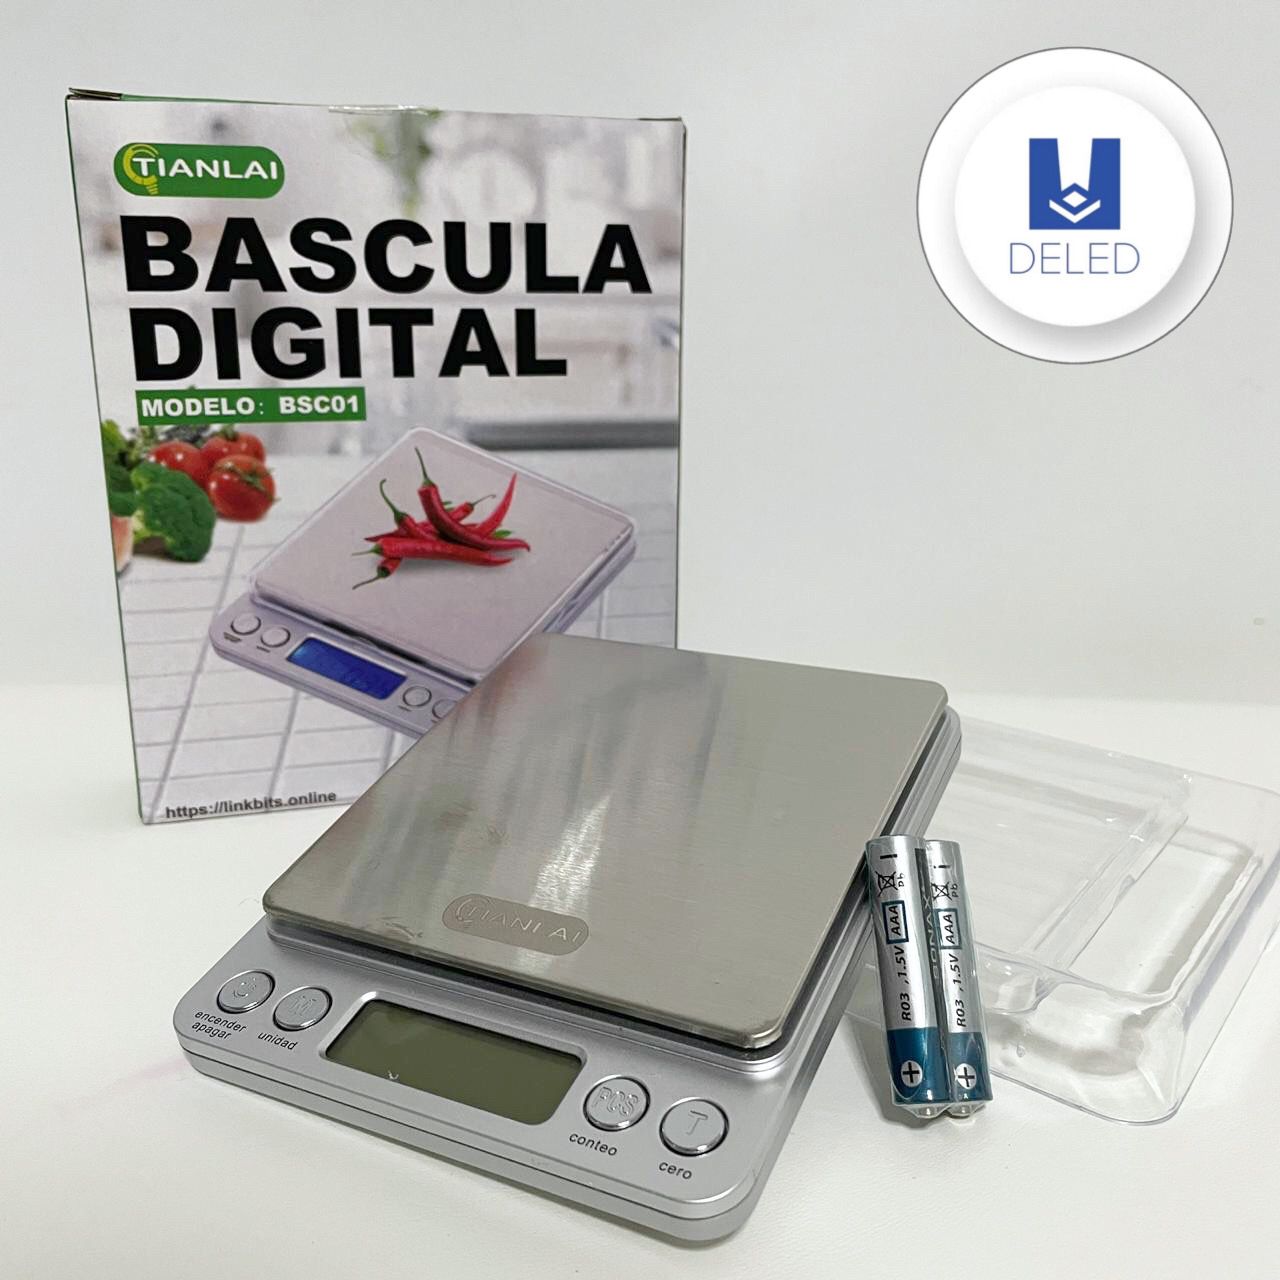 Báscula Mini Digital Gramera (Desde .1g hasta 2Kg) TIANLAI BSC01 – DELED  Electronica y Accesorios